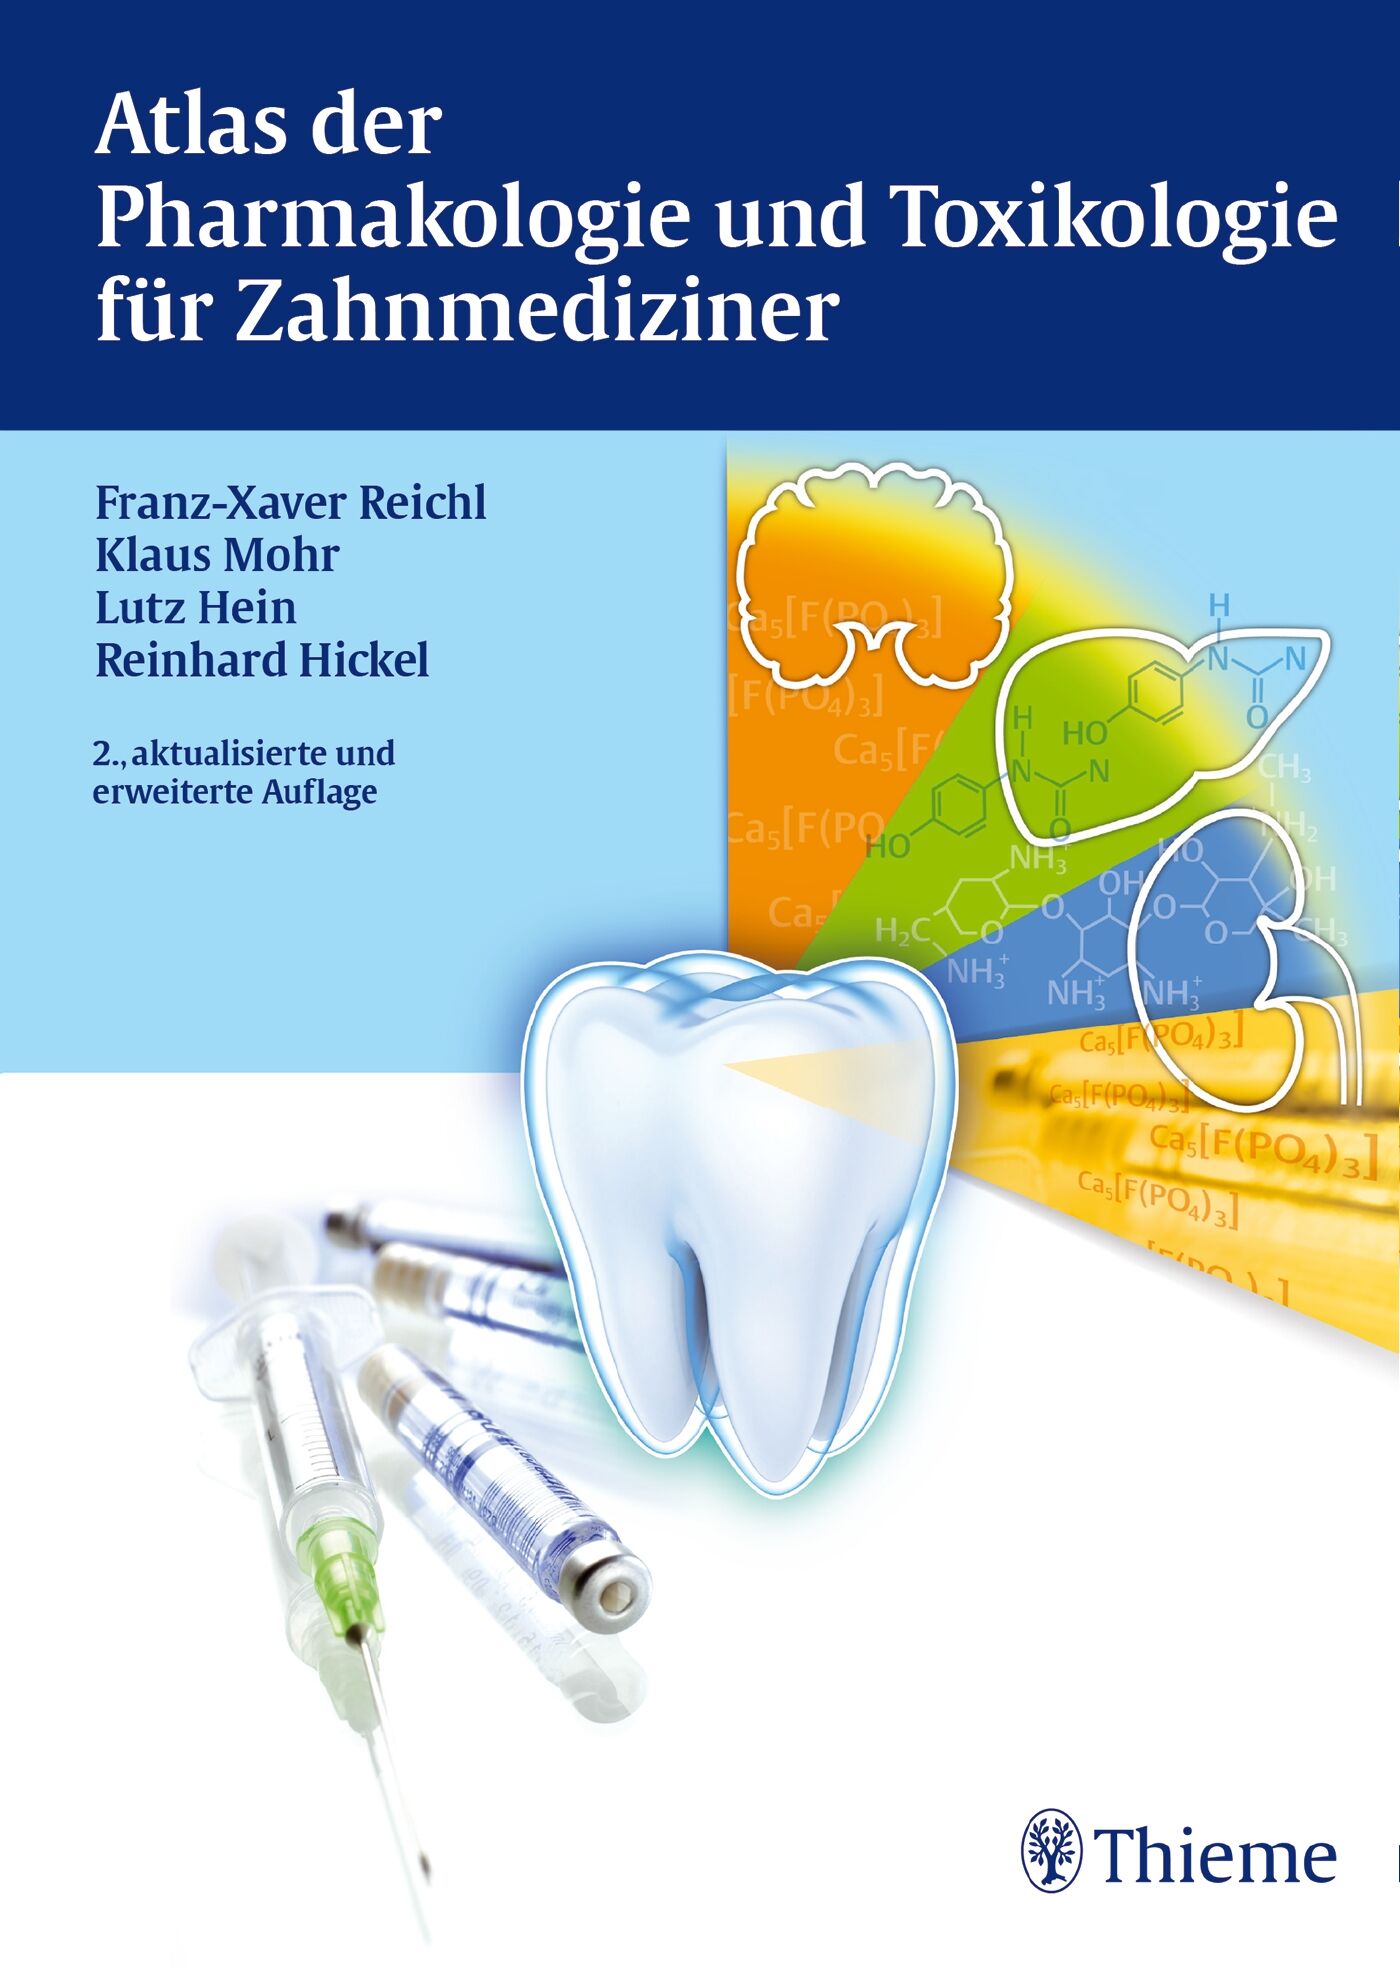 Atlas der Pharmakologie und Toxikologie für Zahnmediziner, 9783132001725